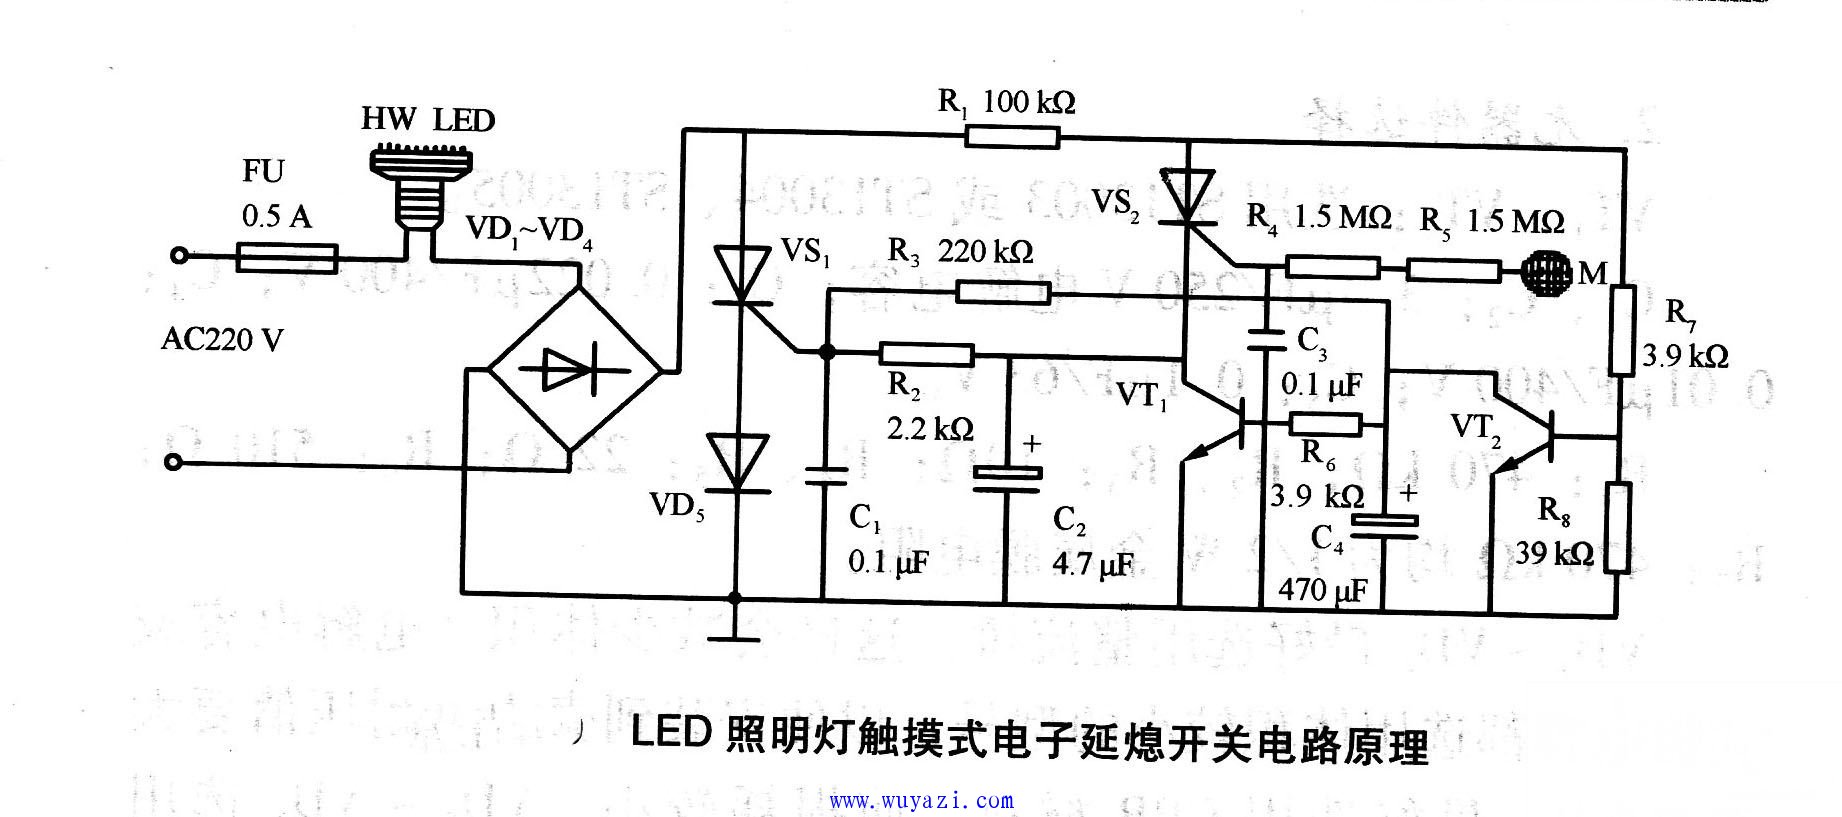 LED照明燈觸摸式電子延熄開關電路原理圖